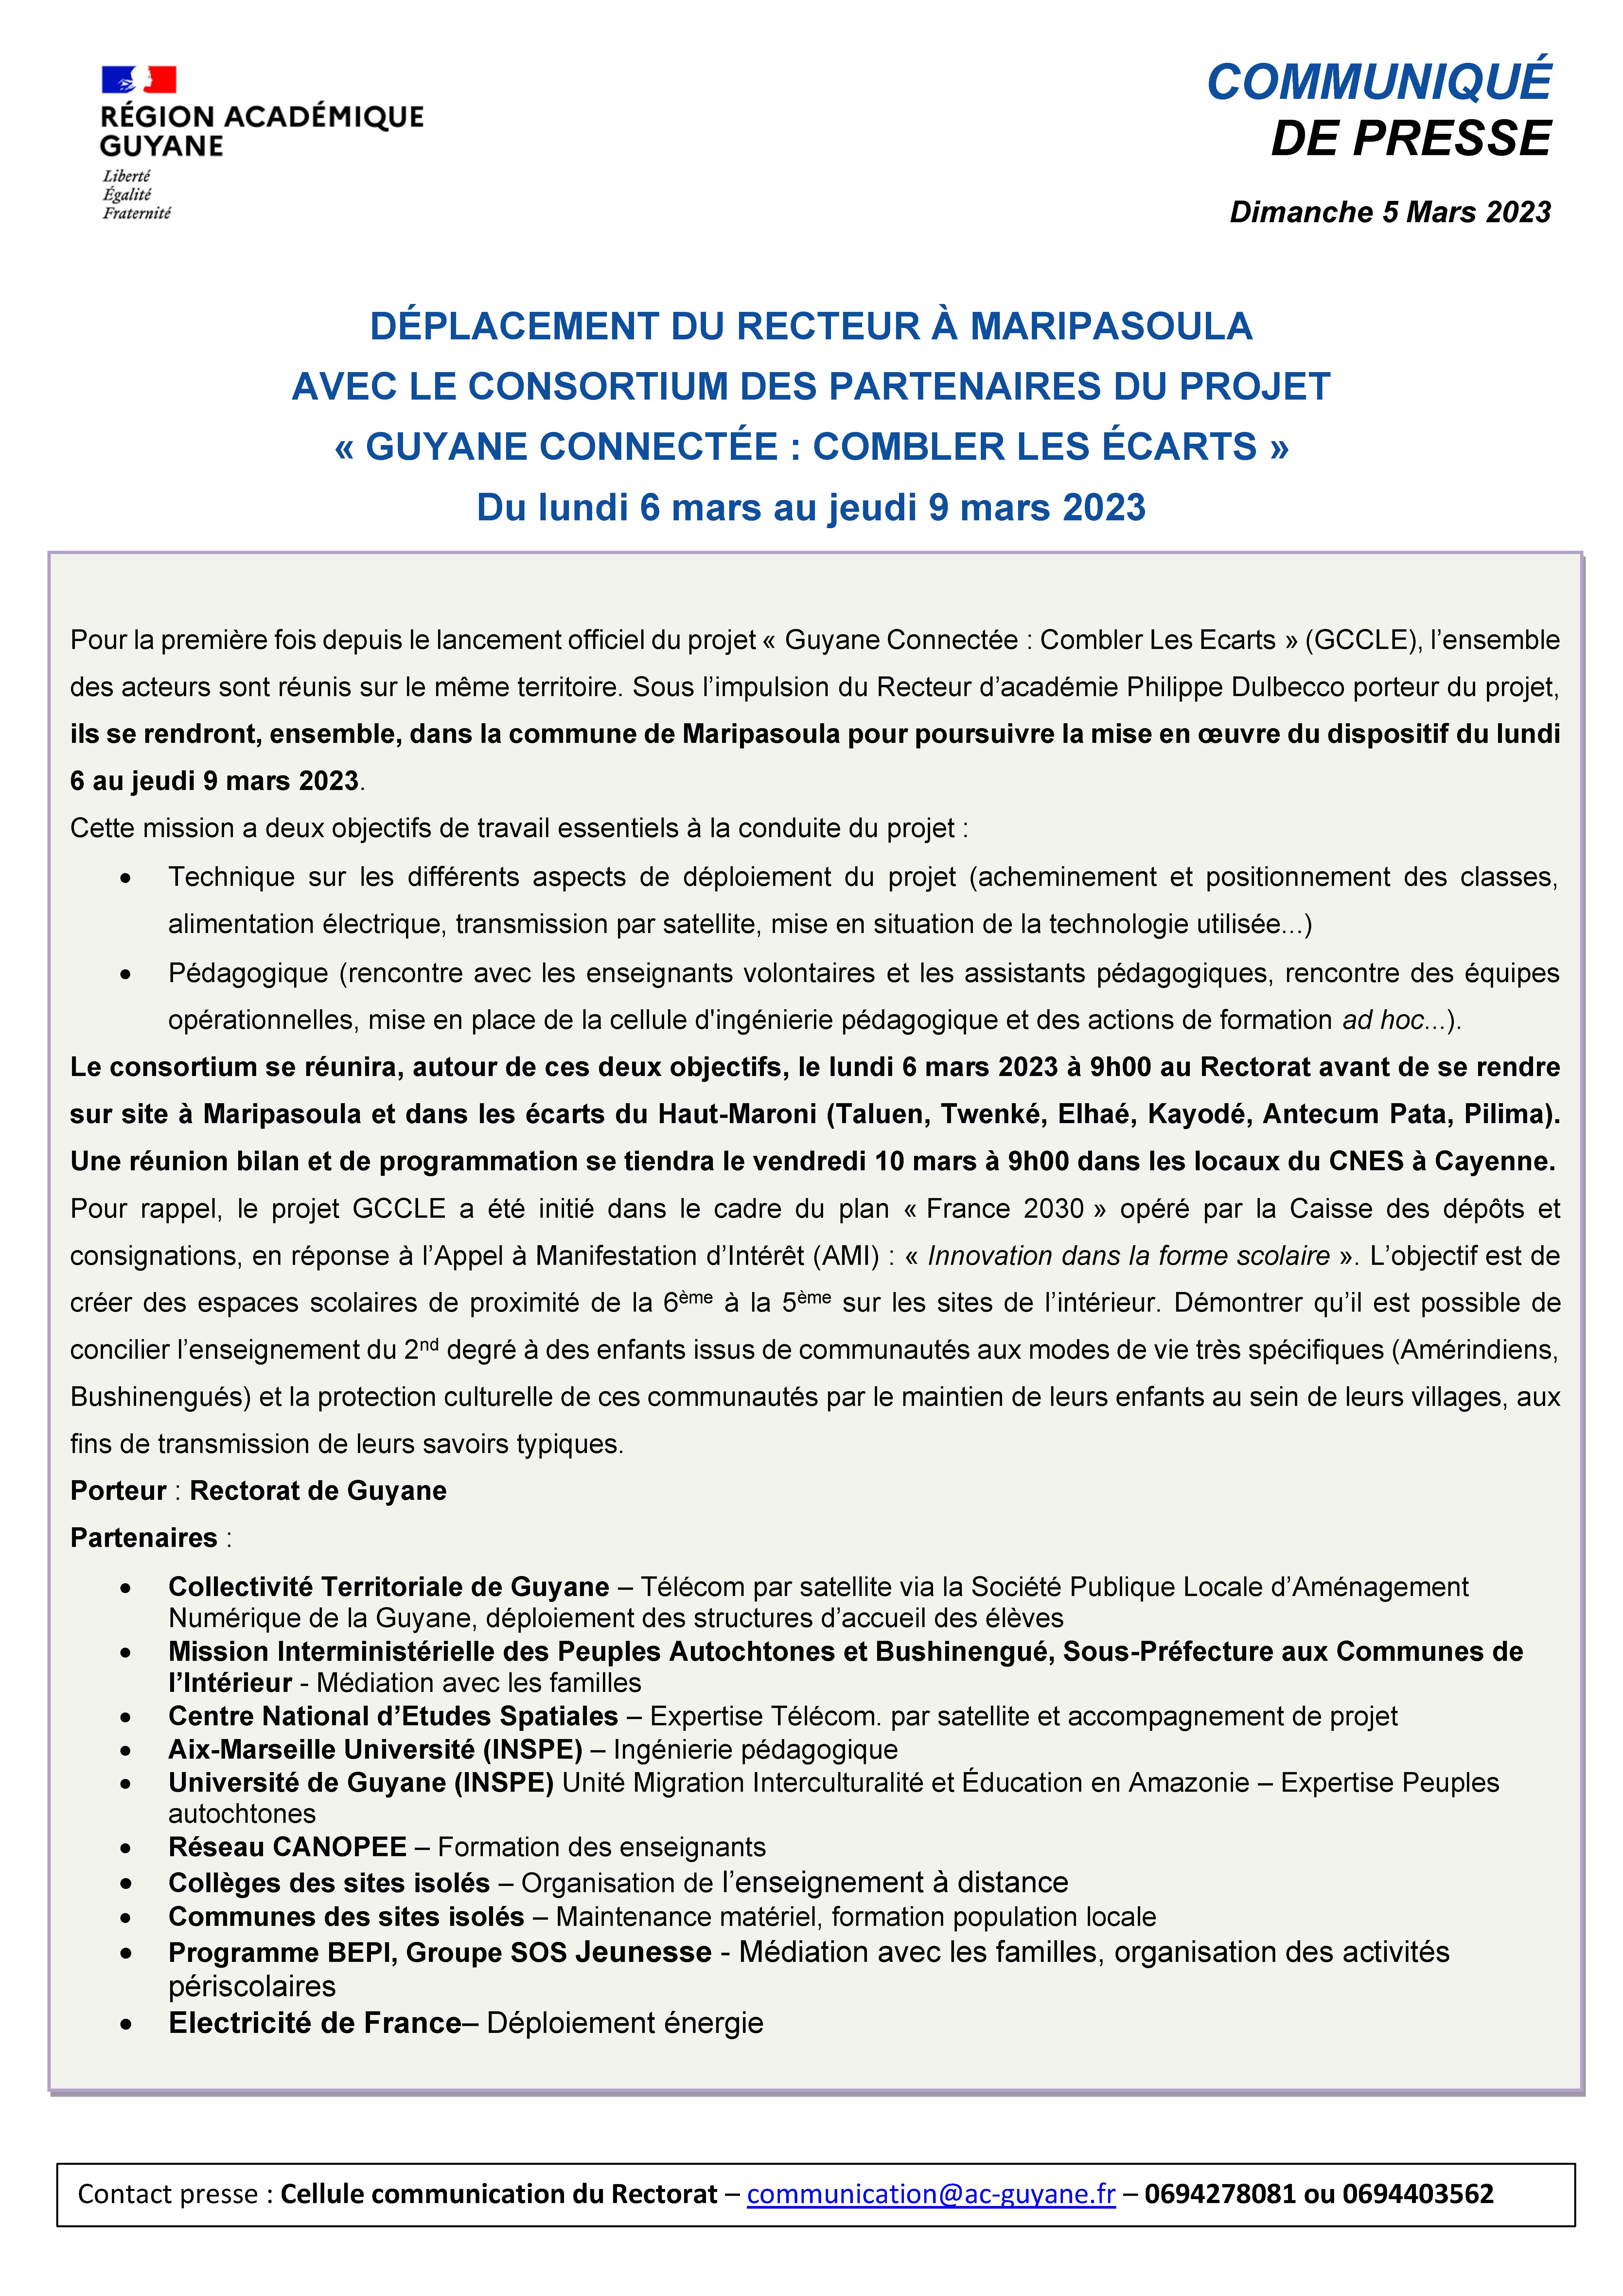 [CP] Déplacement du Recteur et des partenaires du projet Guyane Connectée à Maripasoula - du 6 au 9 mars 2023